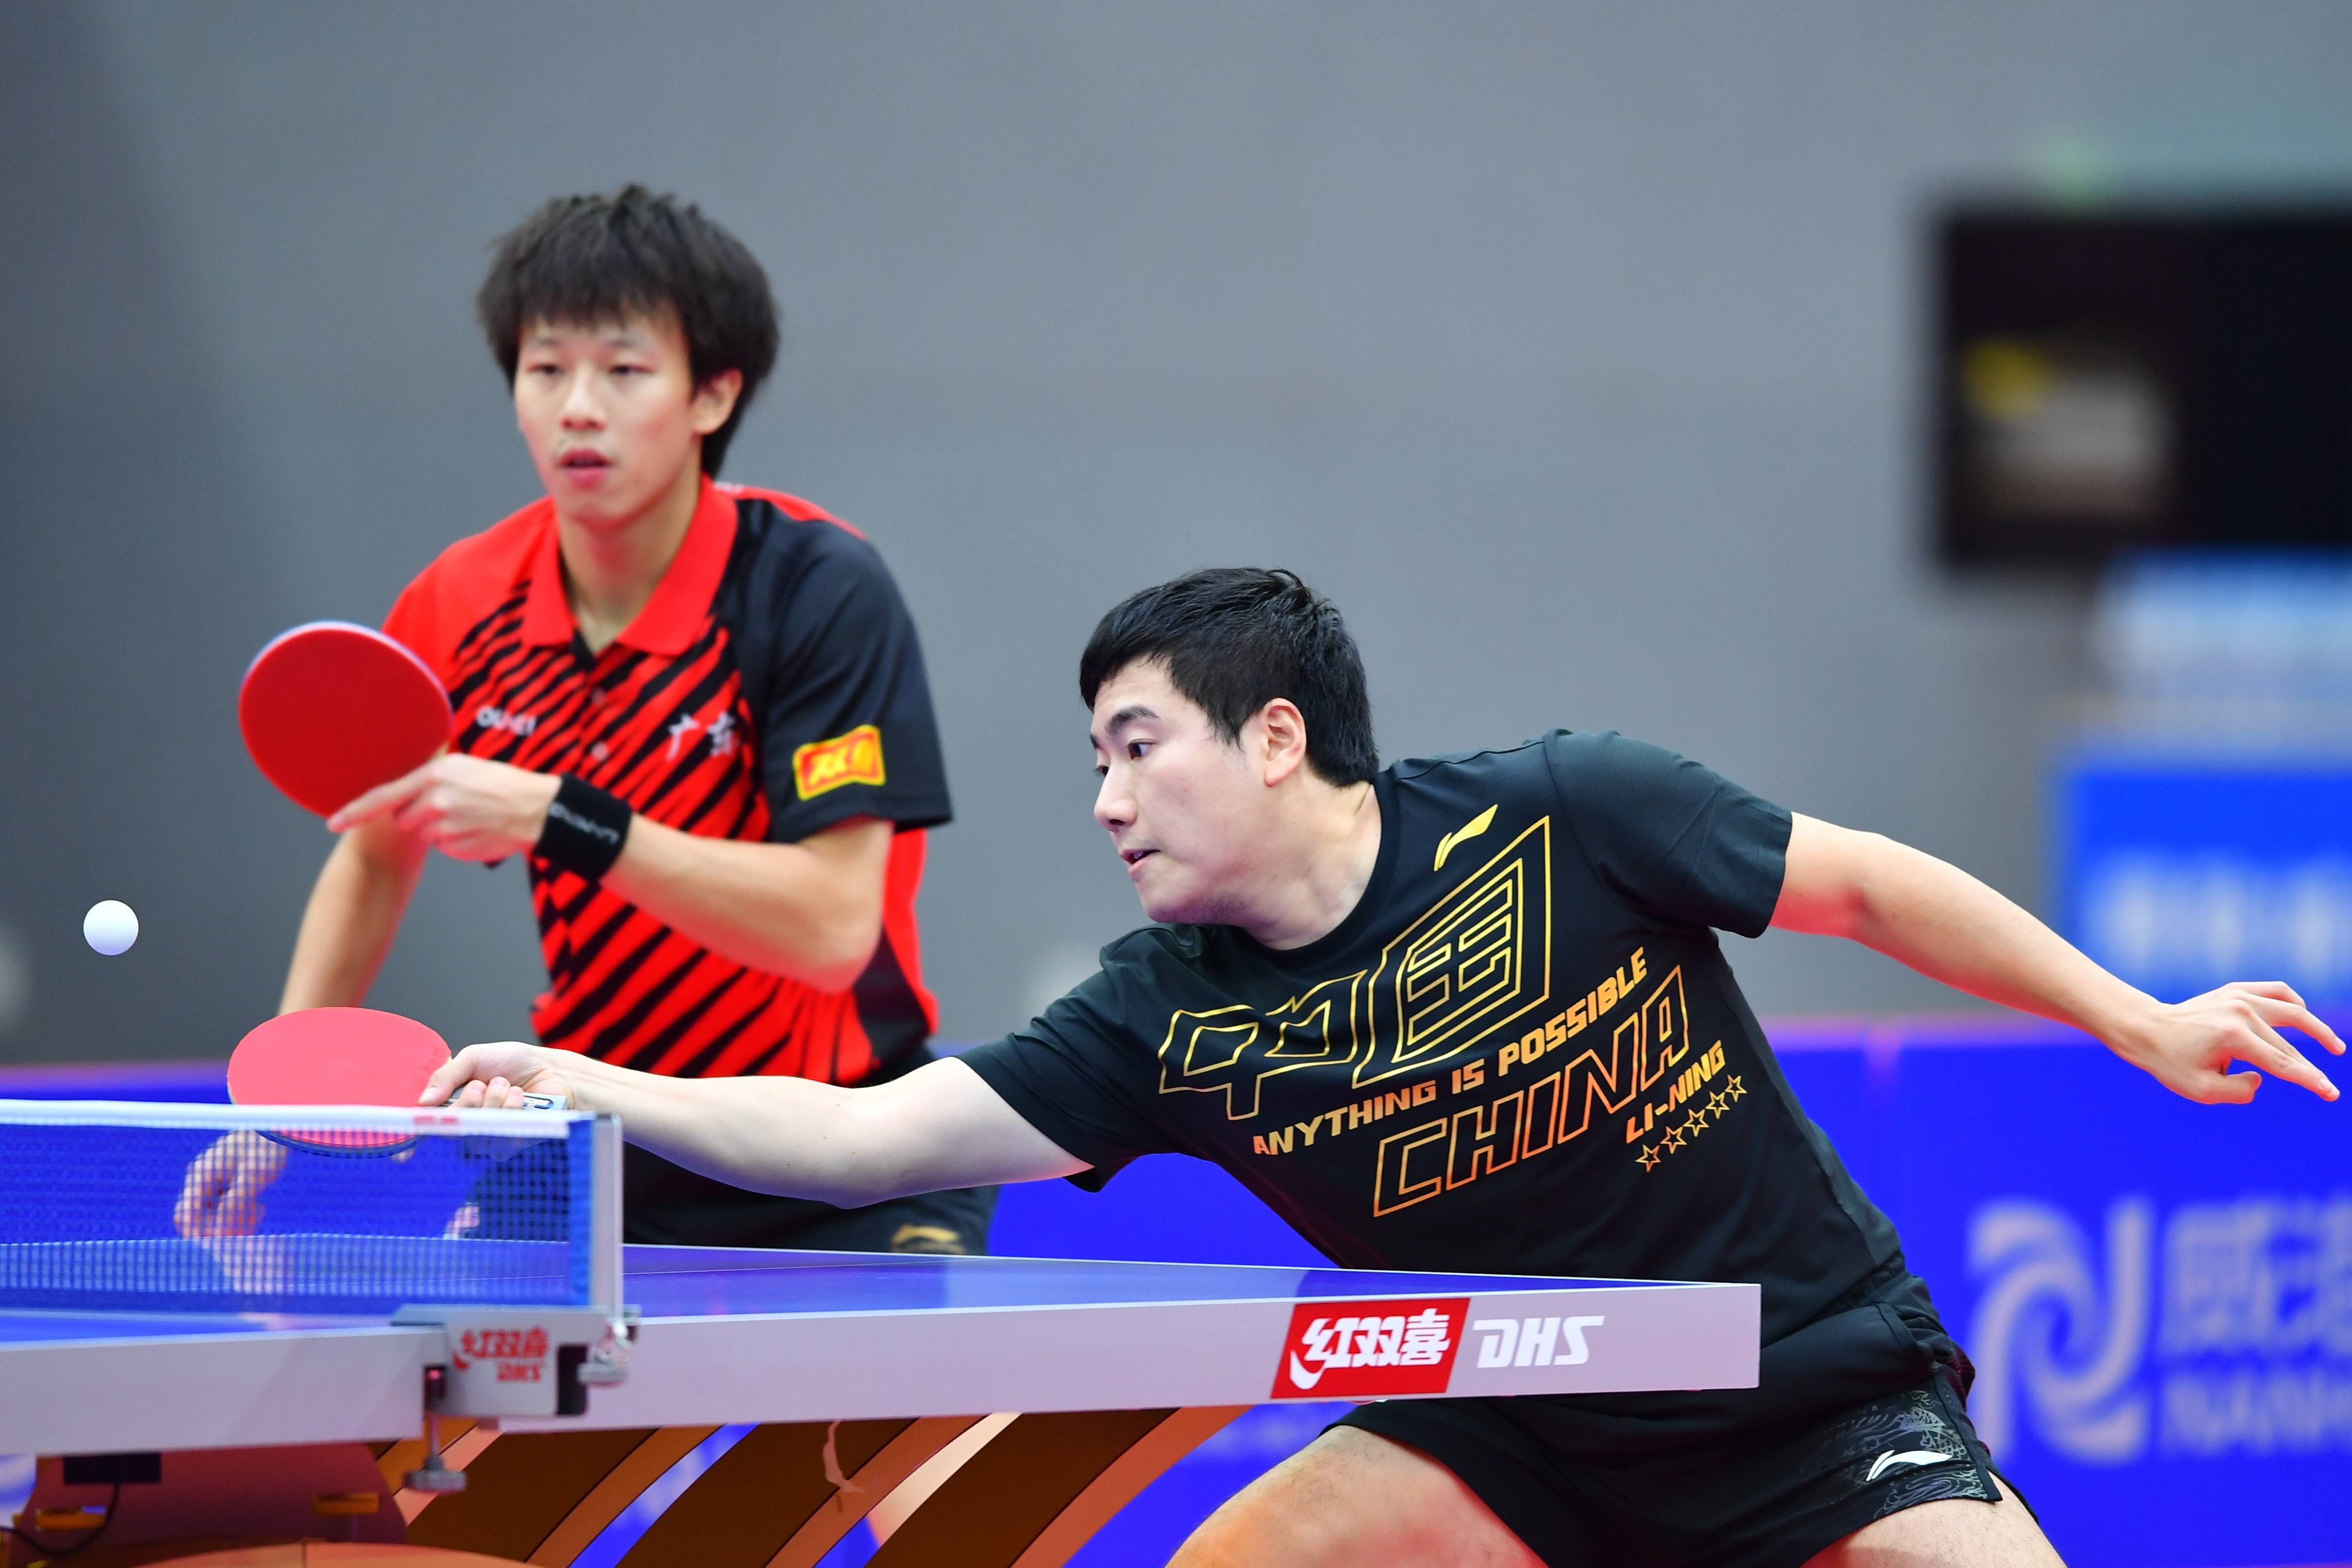 乒乓球——全国锦标赛:林高远/梁靖崑晋级男双决赛